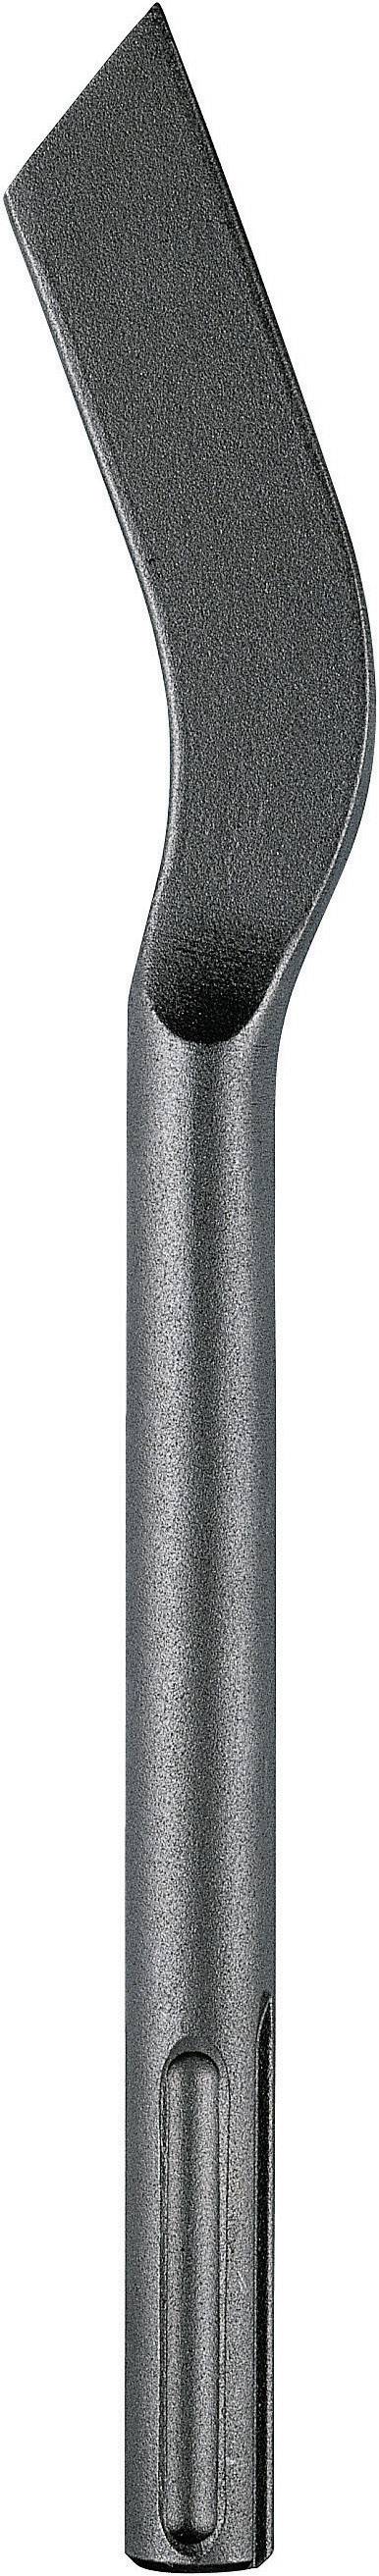 HELLER Mörtelmeißel 10 mm Heller 21011 9 Gesamtlänge 300 mm SDS-Max 1 St.